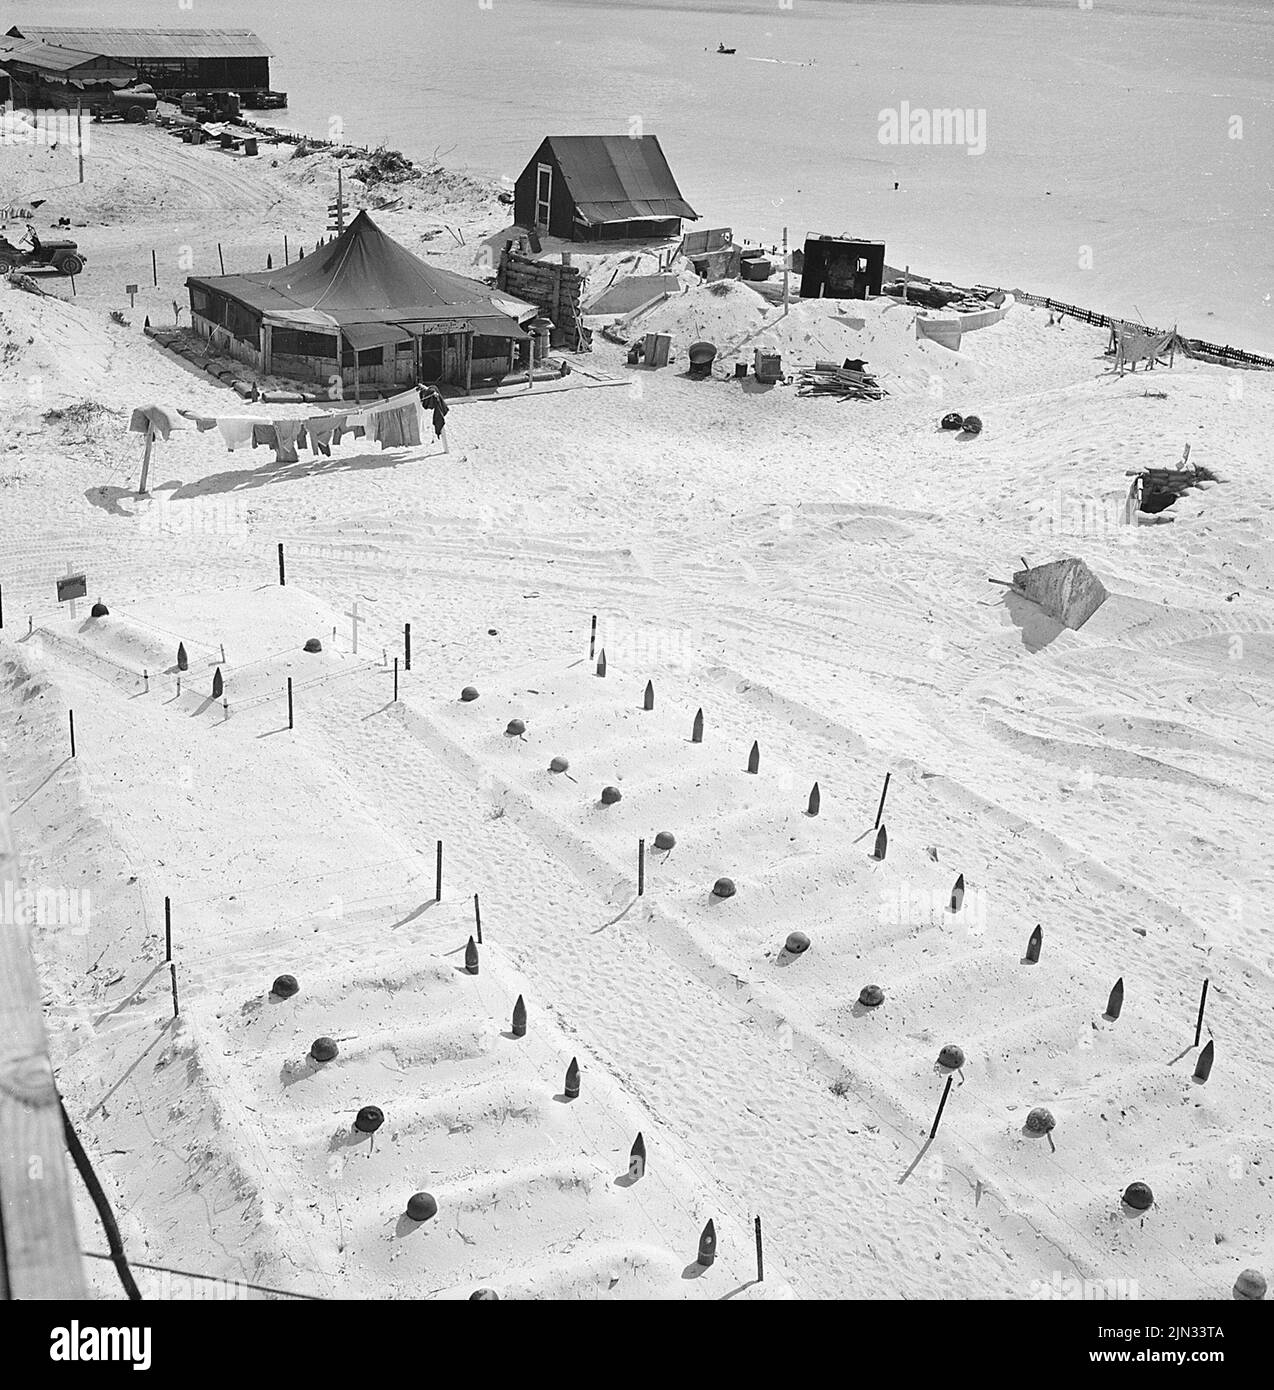 Caschi vuoti e gusci d'artiglieria spesi segnano le tombe dei marines caduti a Tarawa, marzo 1944. Gli sbarchi a Tarawa facevano parte dell'offensiva statunitense contro le Isole del Pacifico, detenuta dal Giappone prima di prepararsi ad un assalto alla terraferma giapponese. Foto Stock